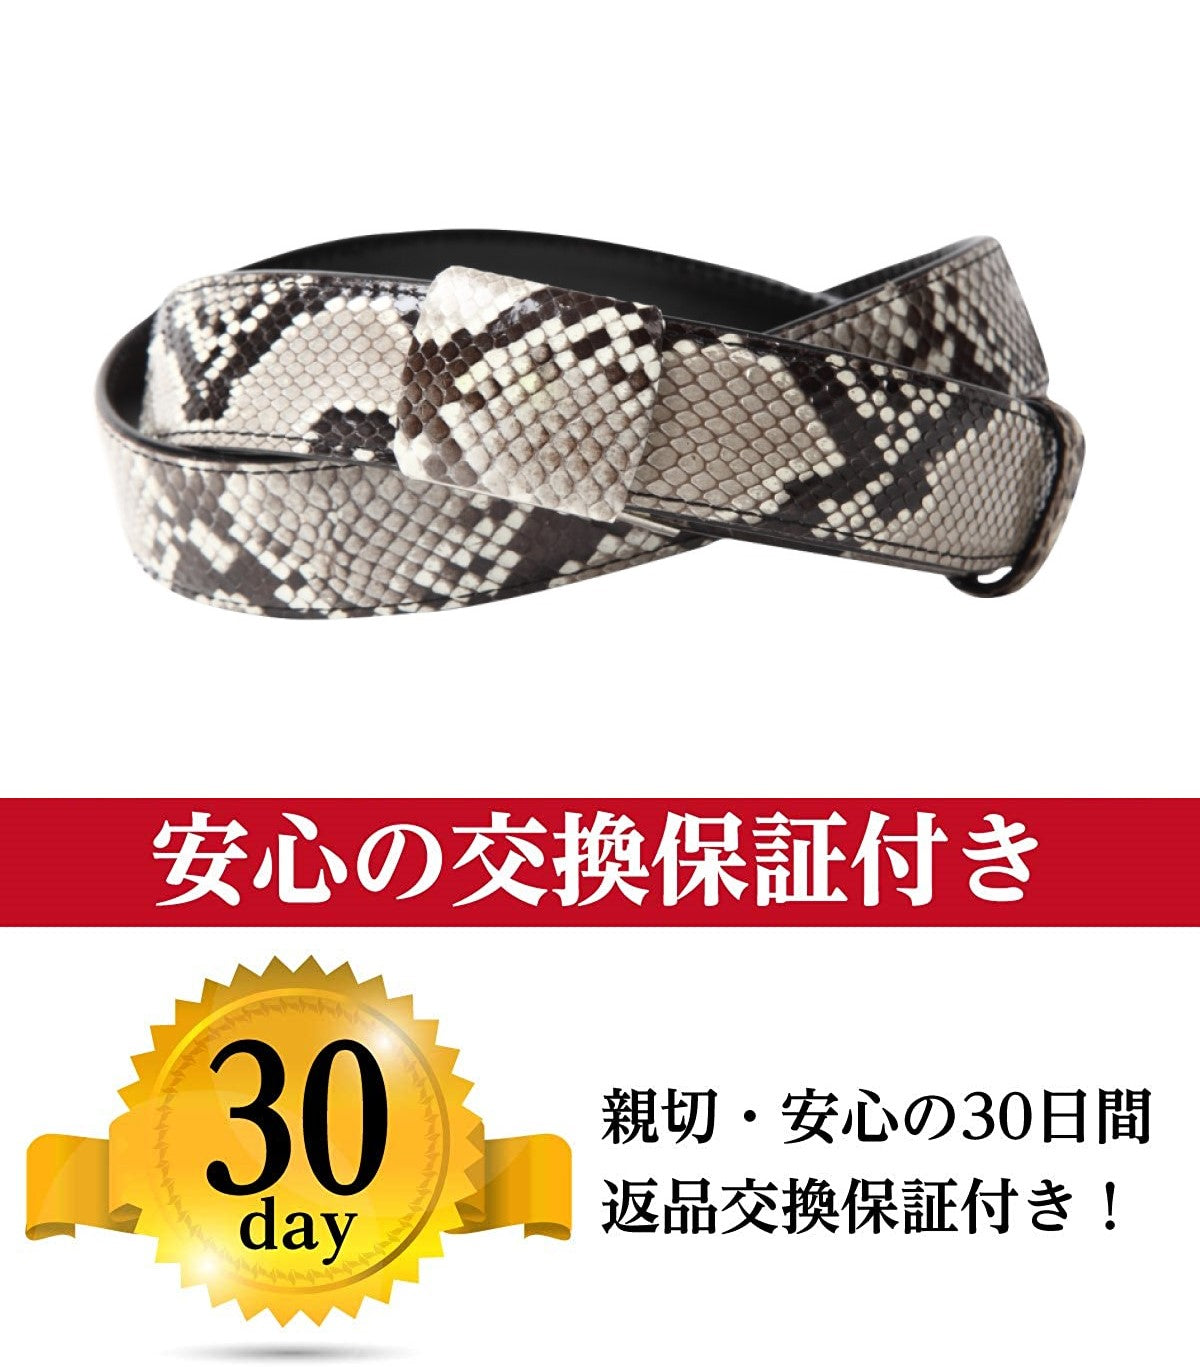  蛇革  ベルト 錦蛇 ダイヤモンド  レザー 包み バックル 本 蛇革 皮革 メンズ 日本製 3cm幅 